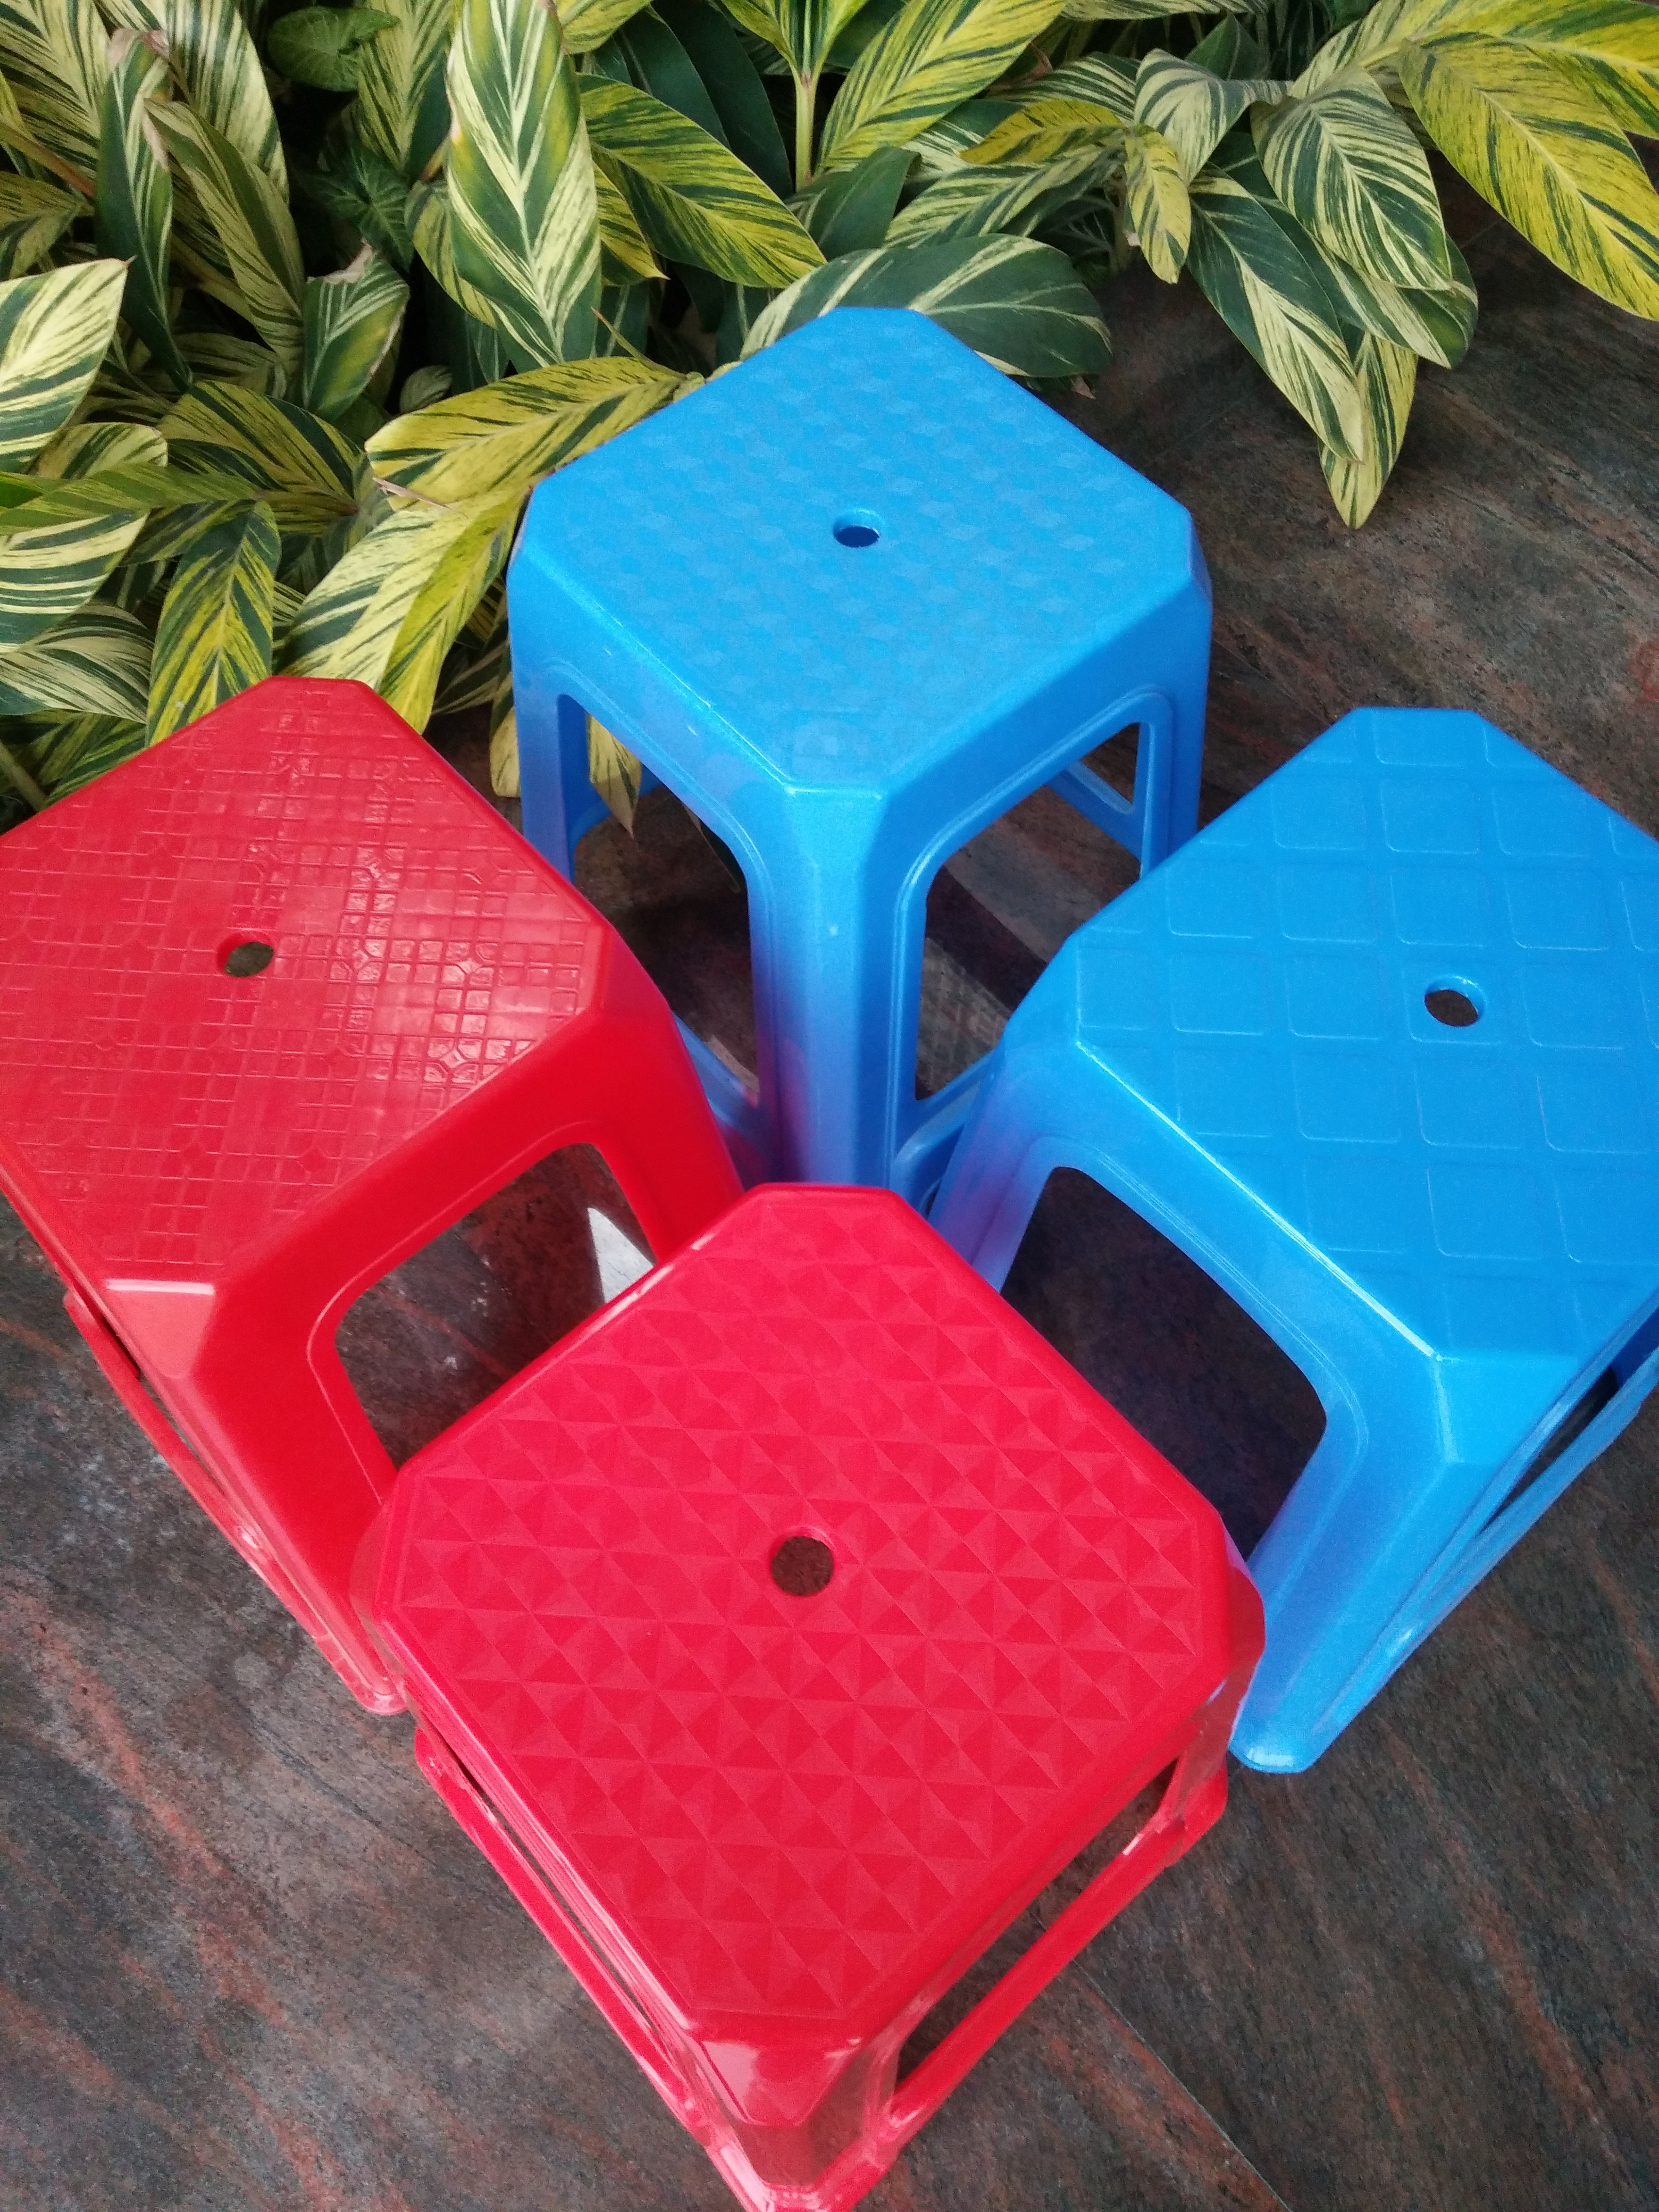 佛山红色塑料凳子生产厂家 红色塑胶凳子 红色方凳厂家直销 方凳图片